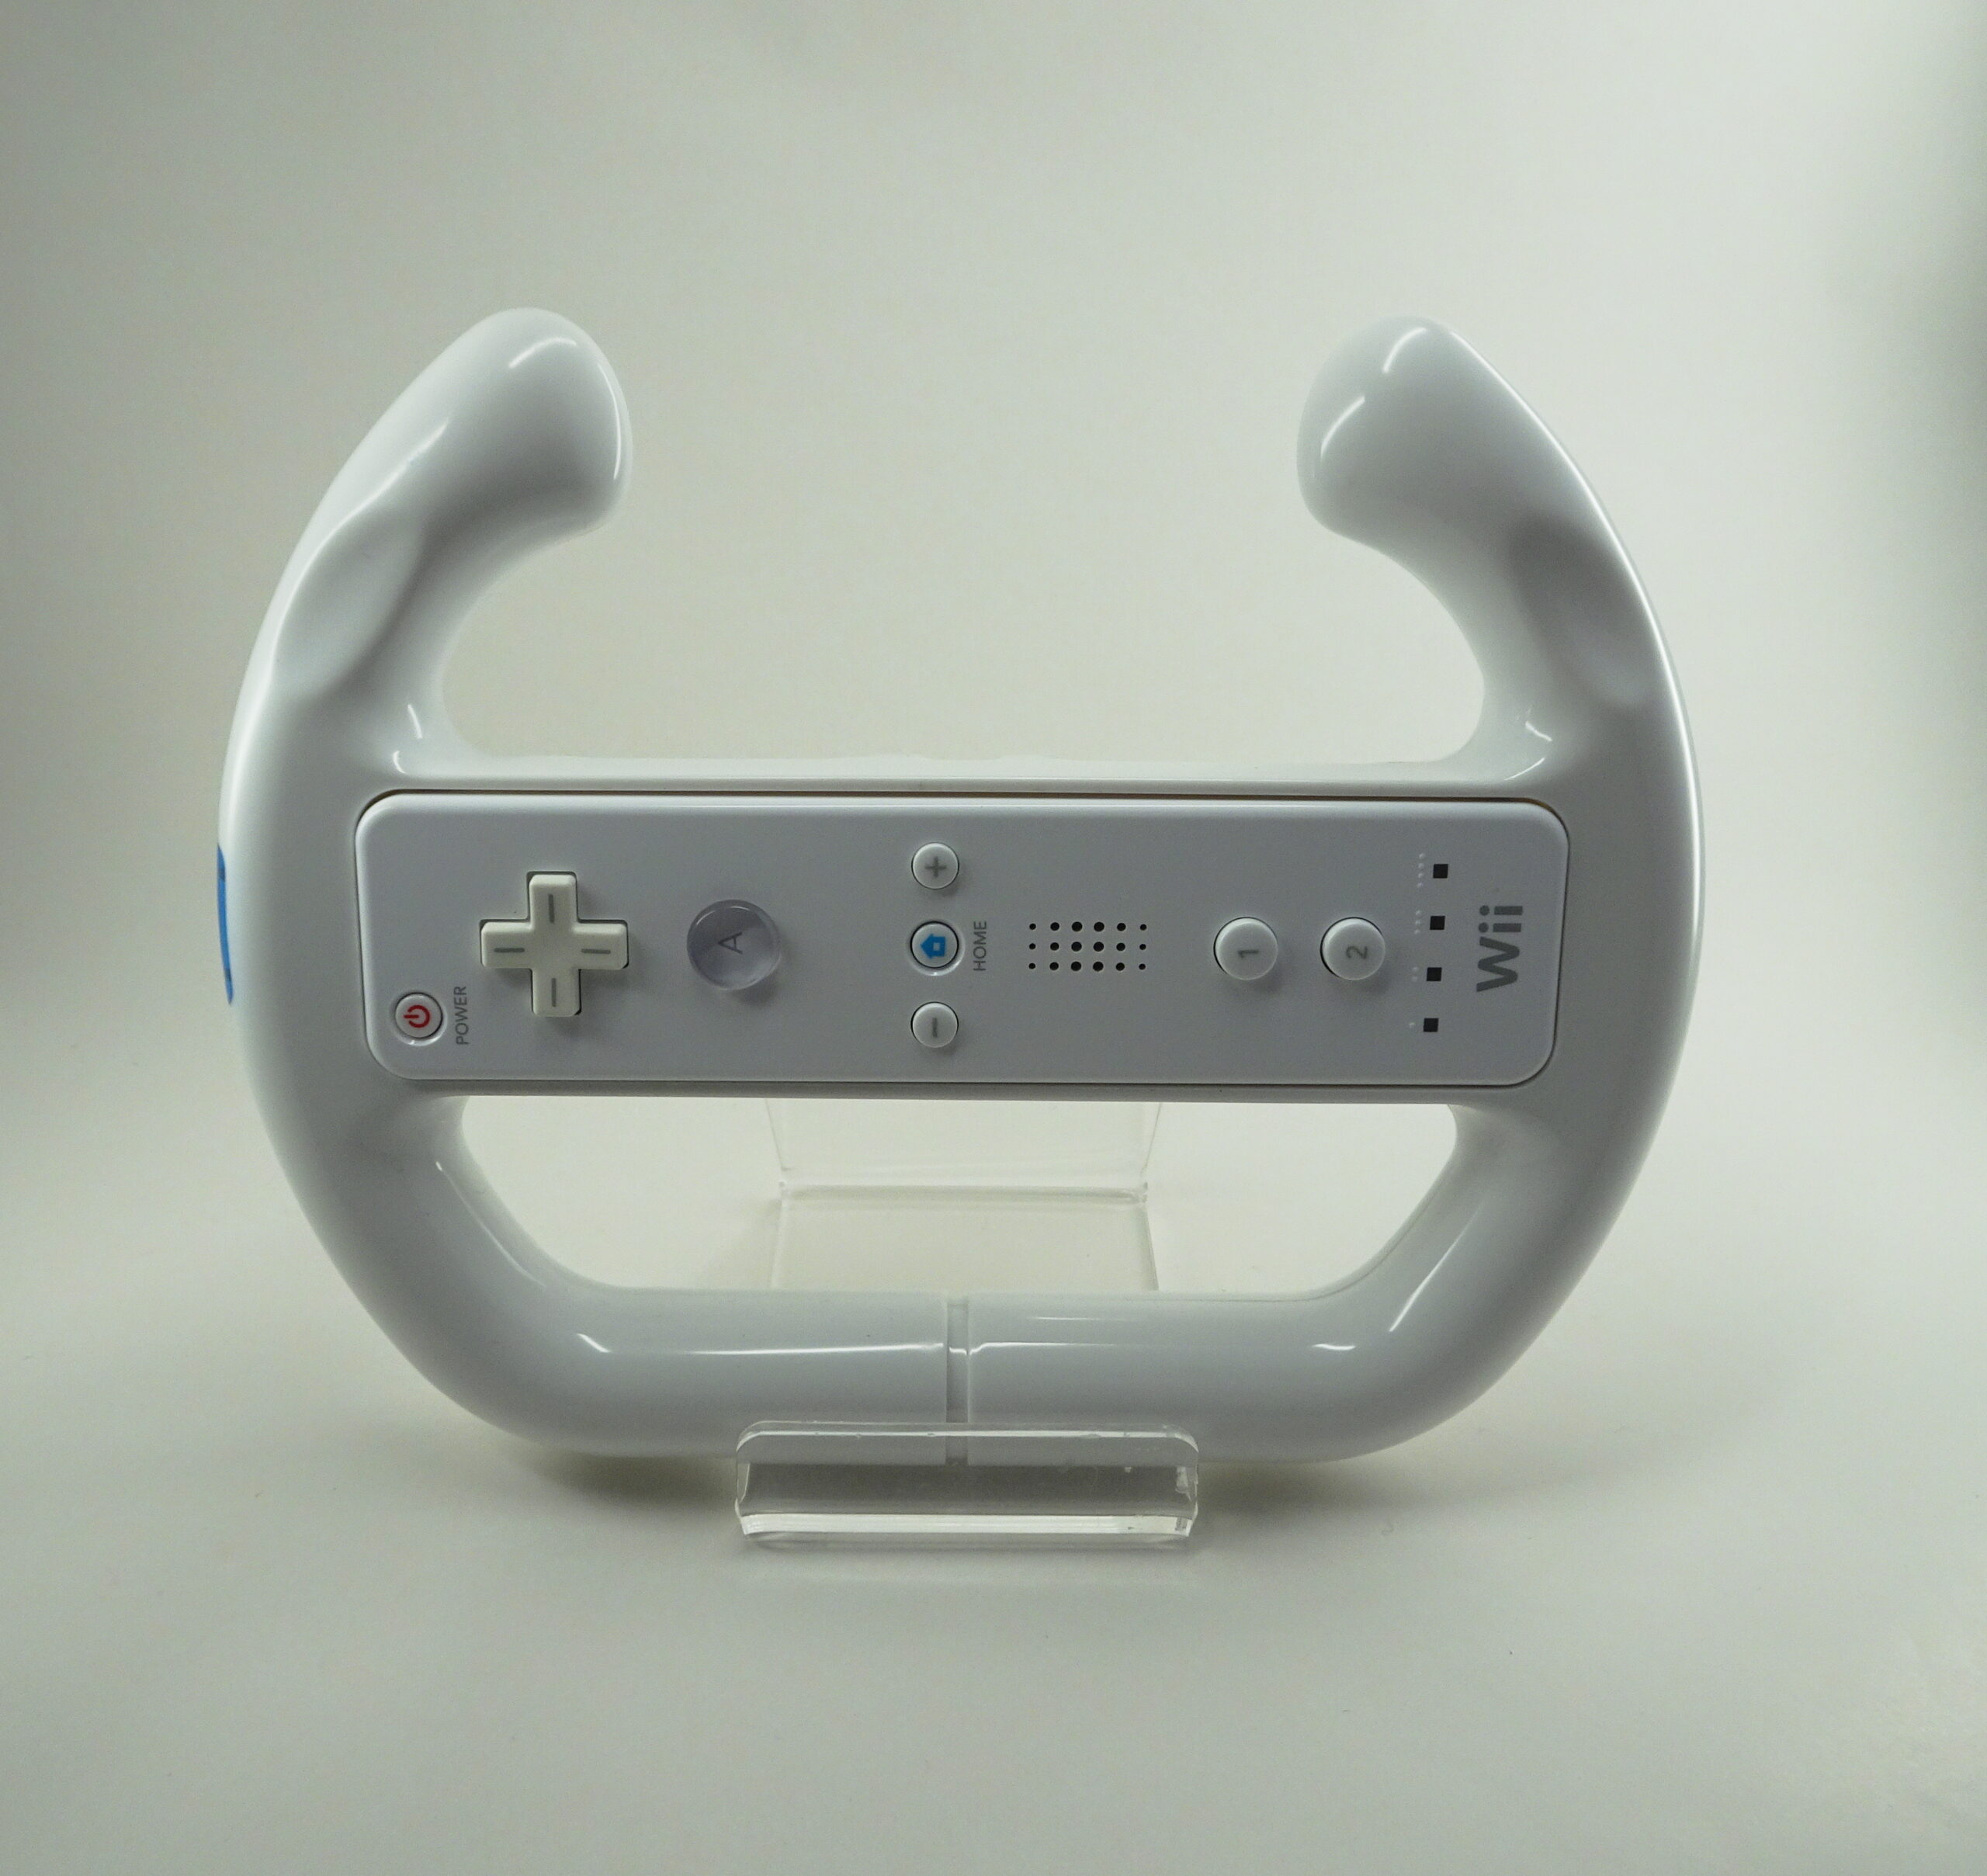 Racer Rat - Wii Controller